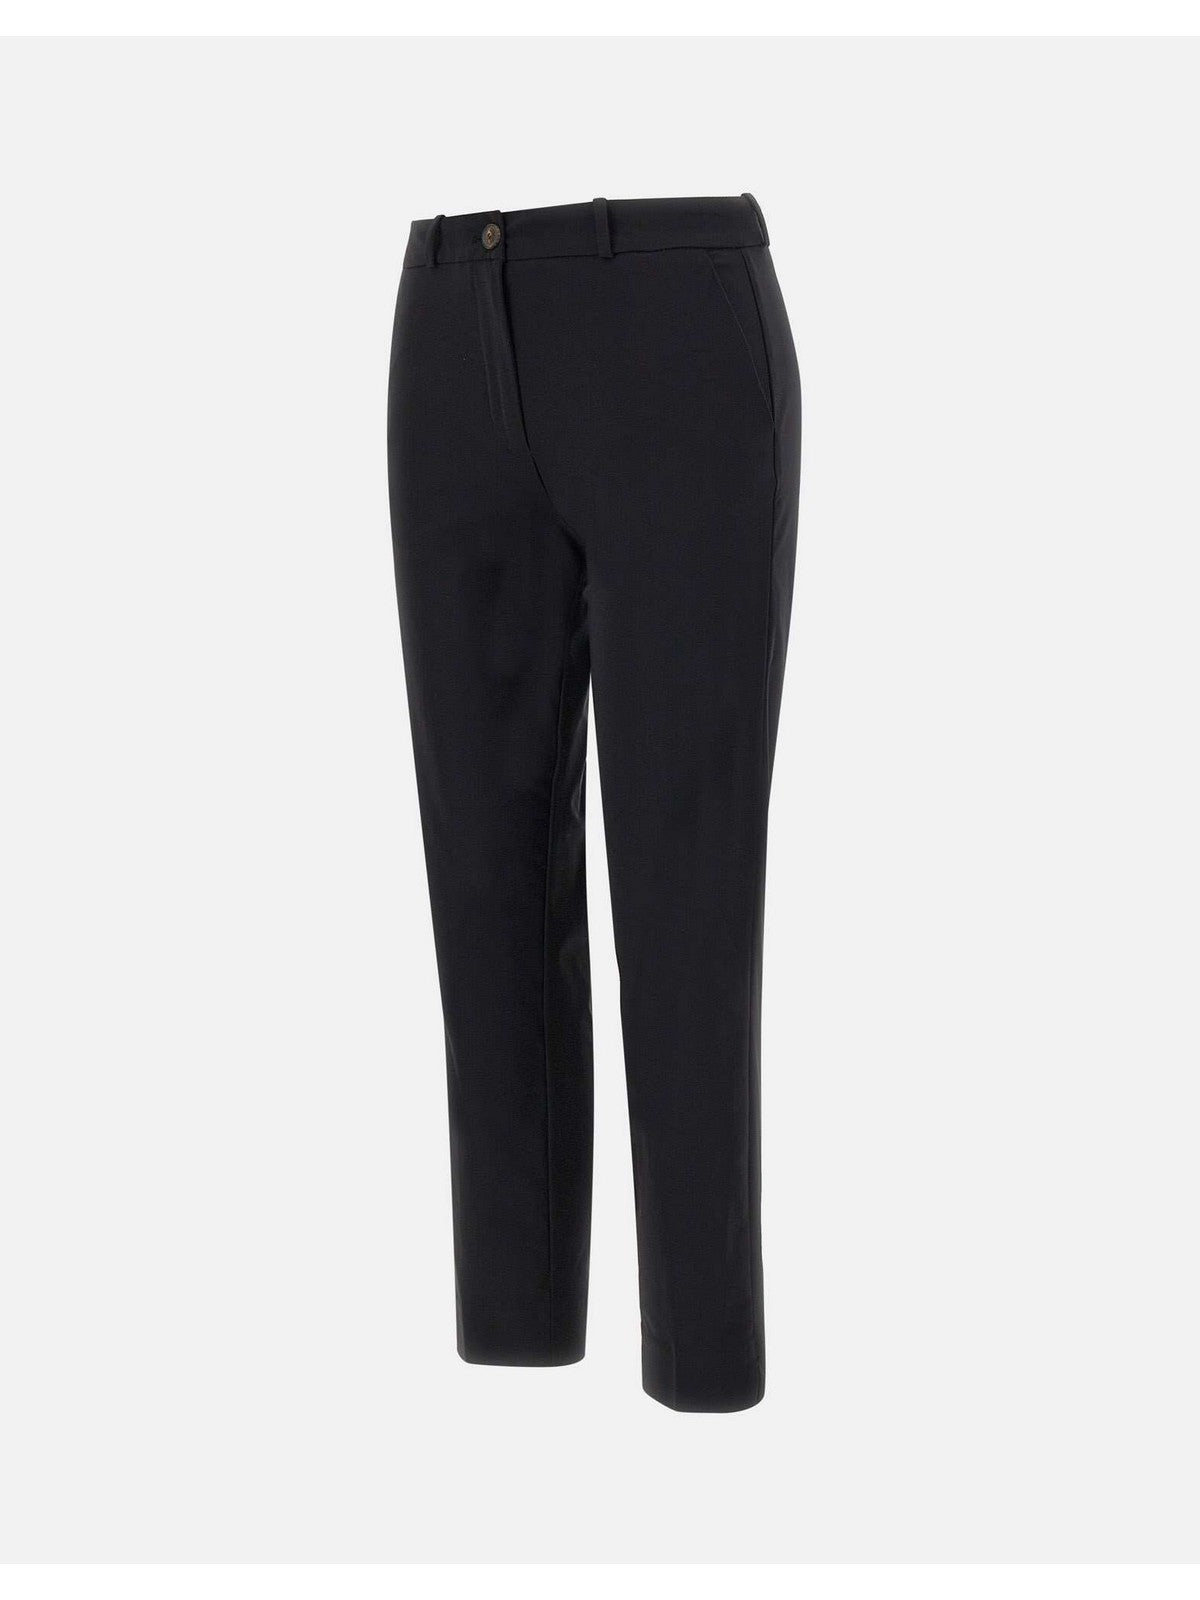 Pantalon RRD pour femmes SES700 10 Noir